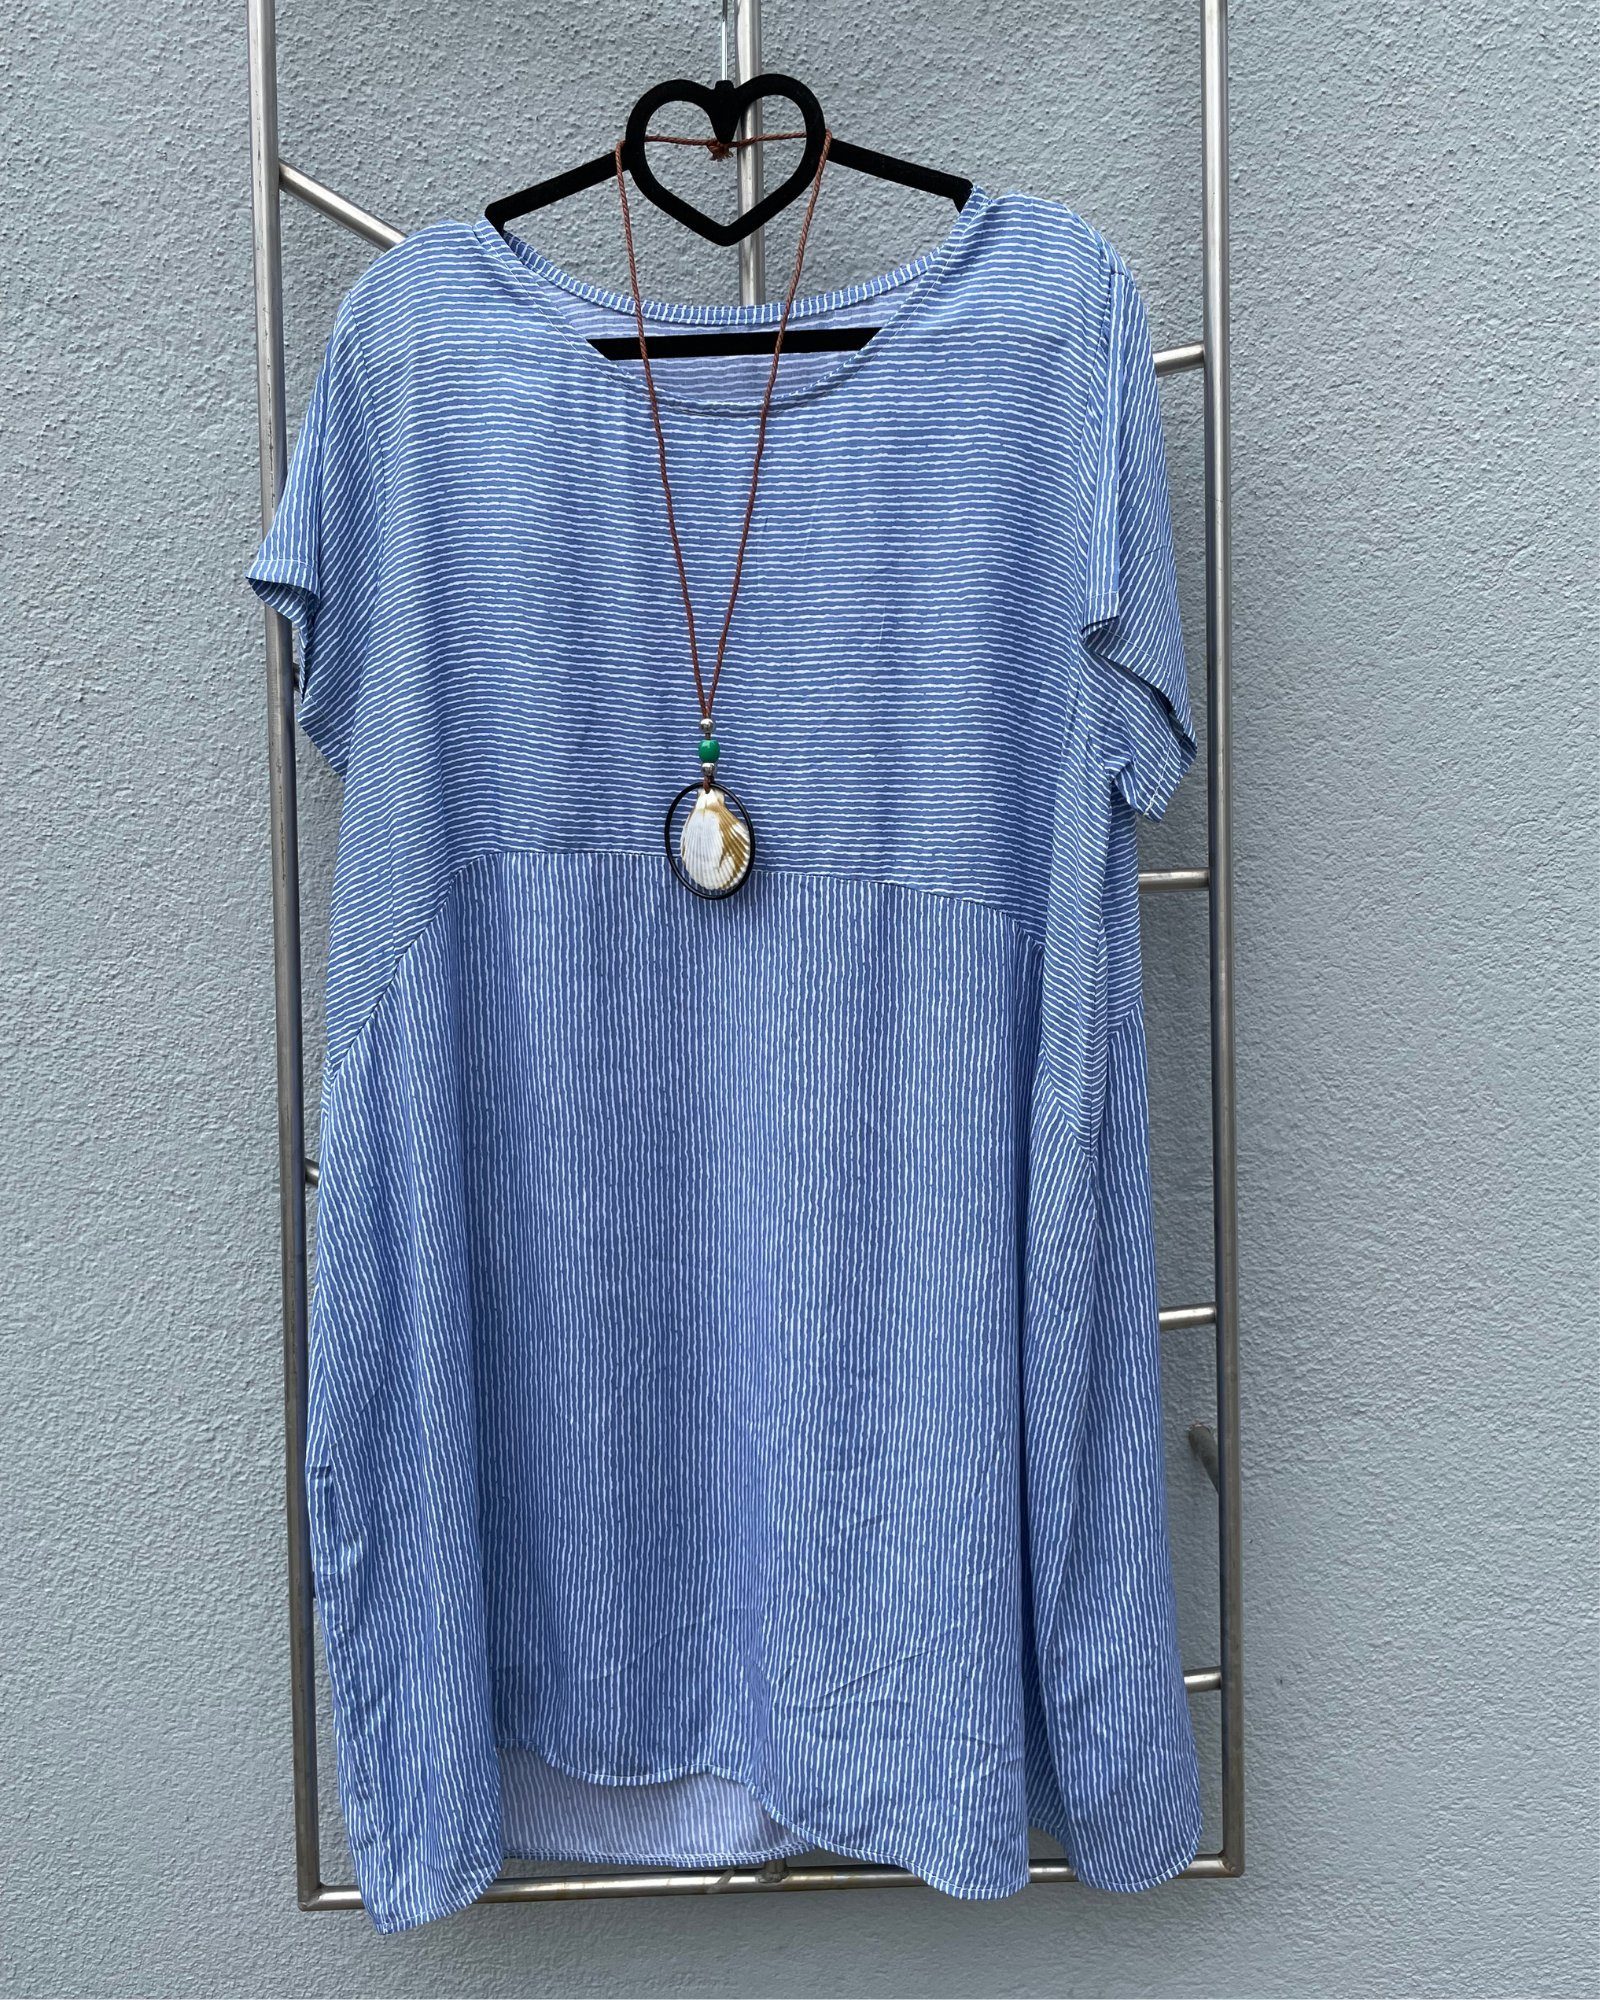 ITALY VIBES Shirtkleid - weites Midikleid SANDRA - kurzarm Kleid mit gratis Kette - ONE SIZE passt hier Gr. S - XXL blau/weiß